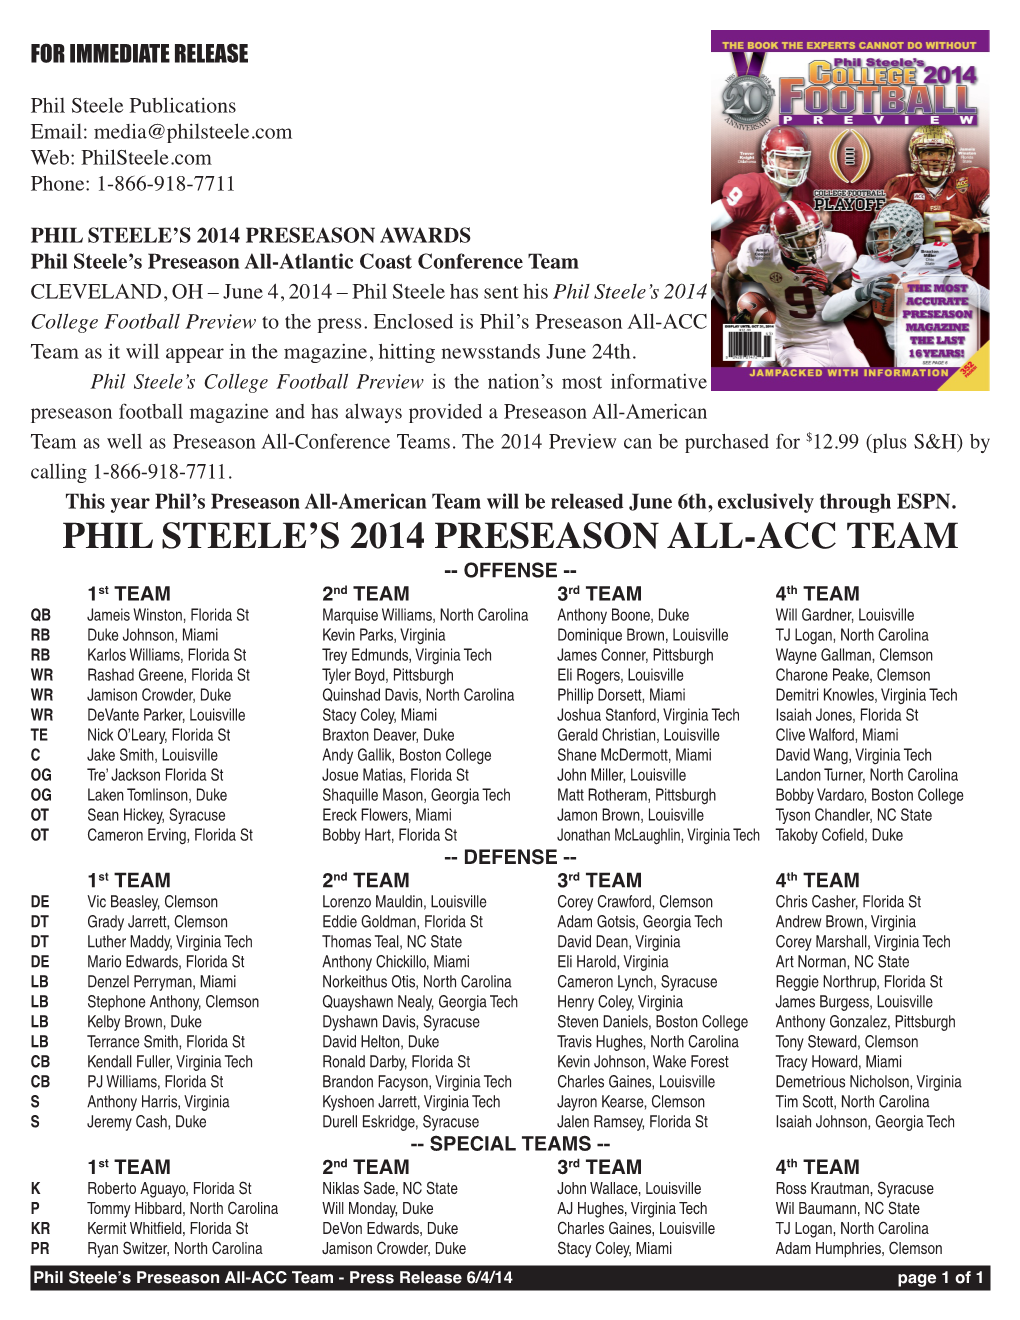 Phil Steele's 2014 Preseason All-Acc Team